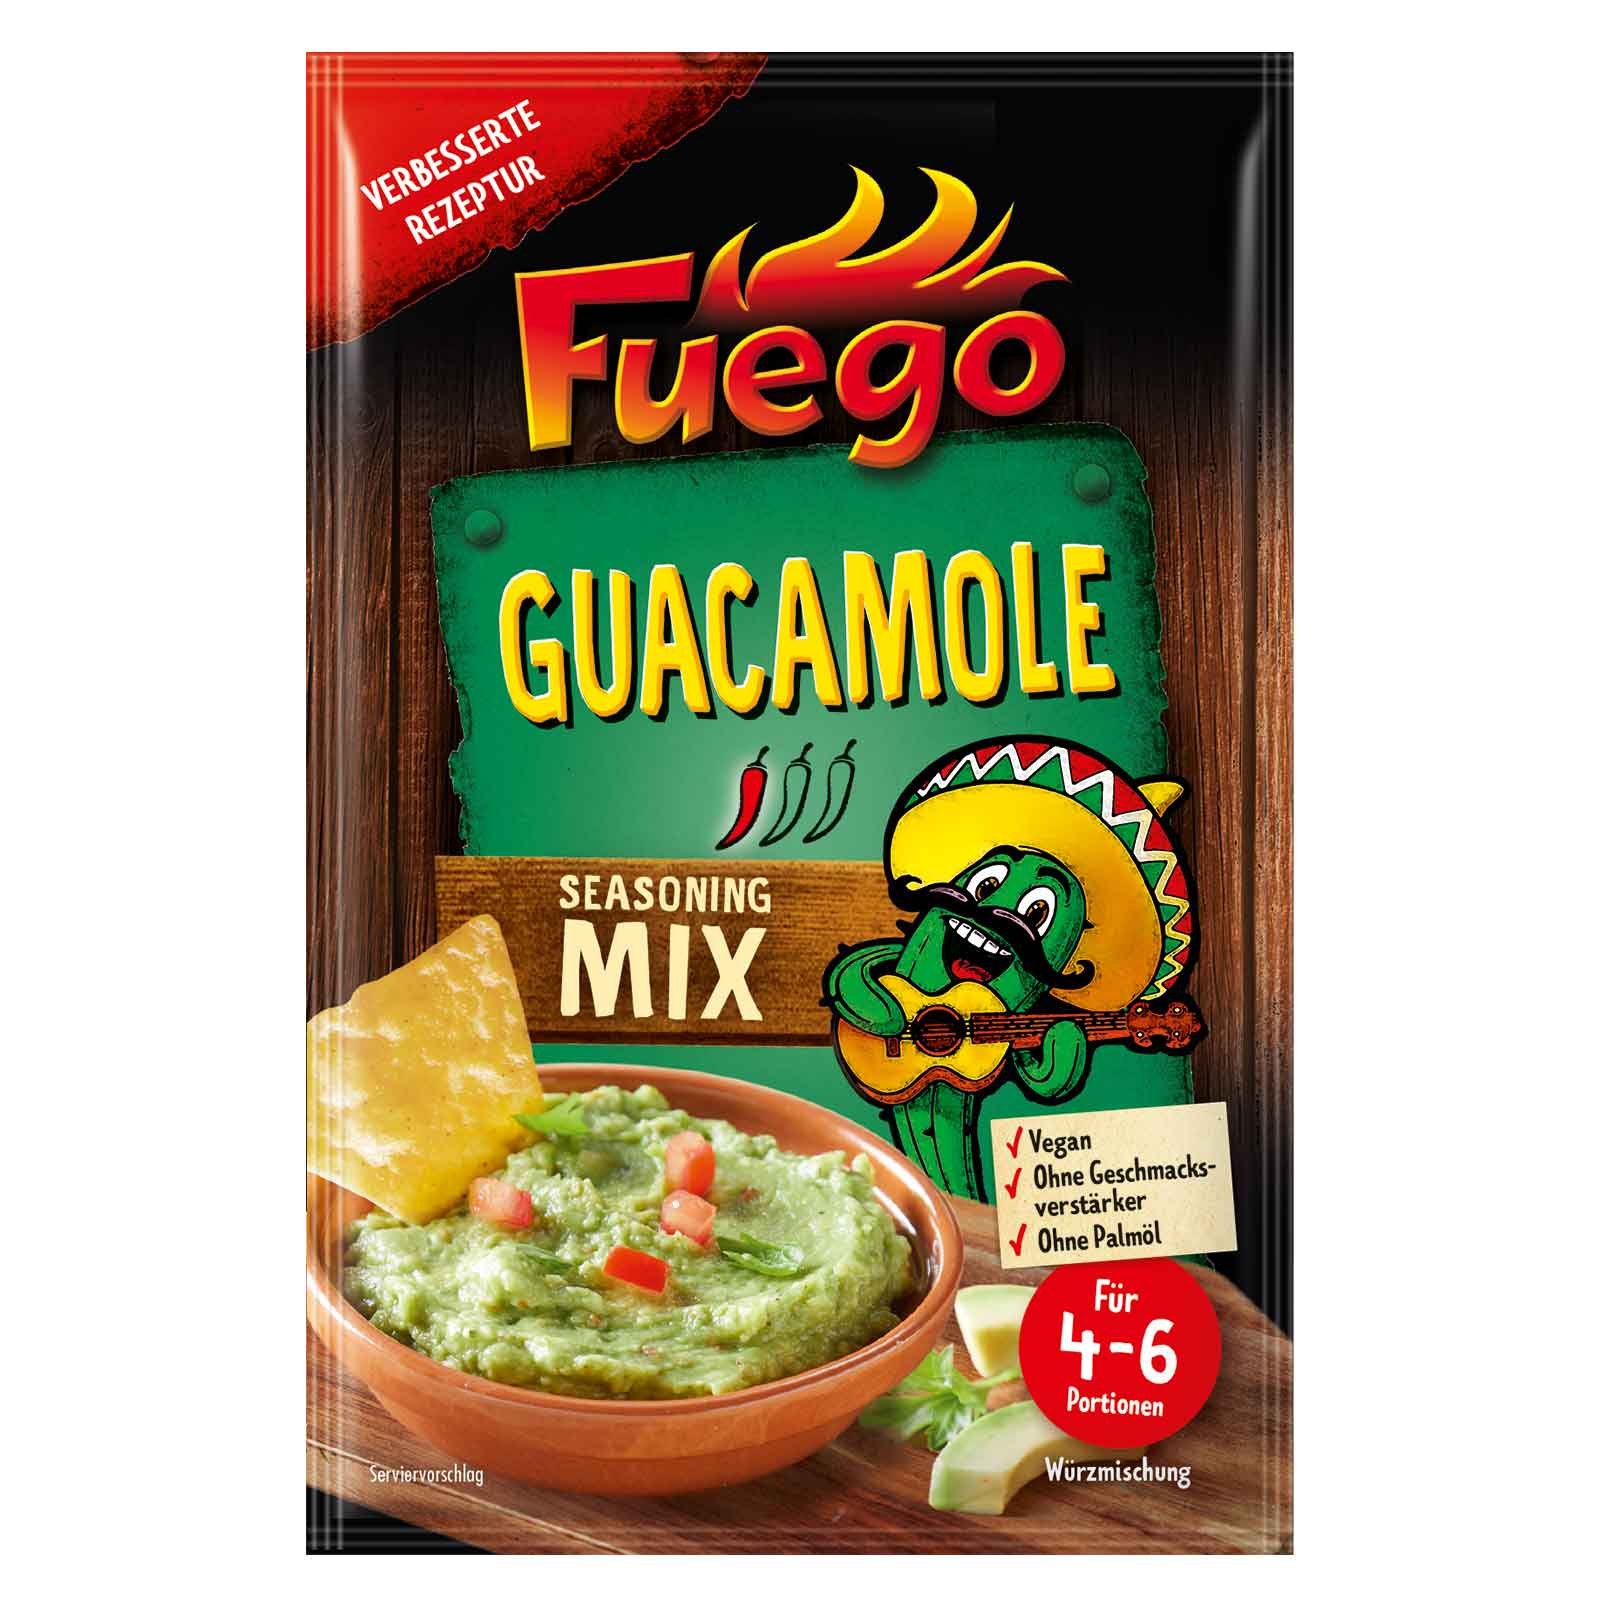 Mix condimente Guacamole, 30g, Fuego